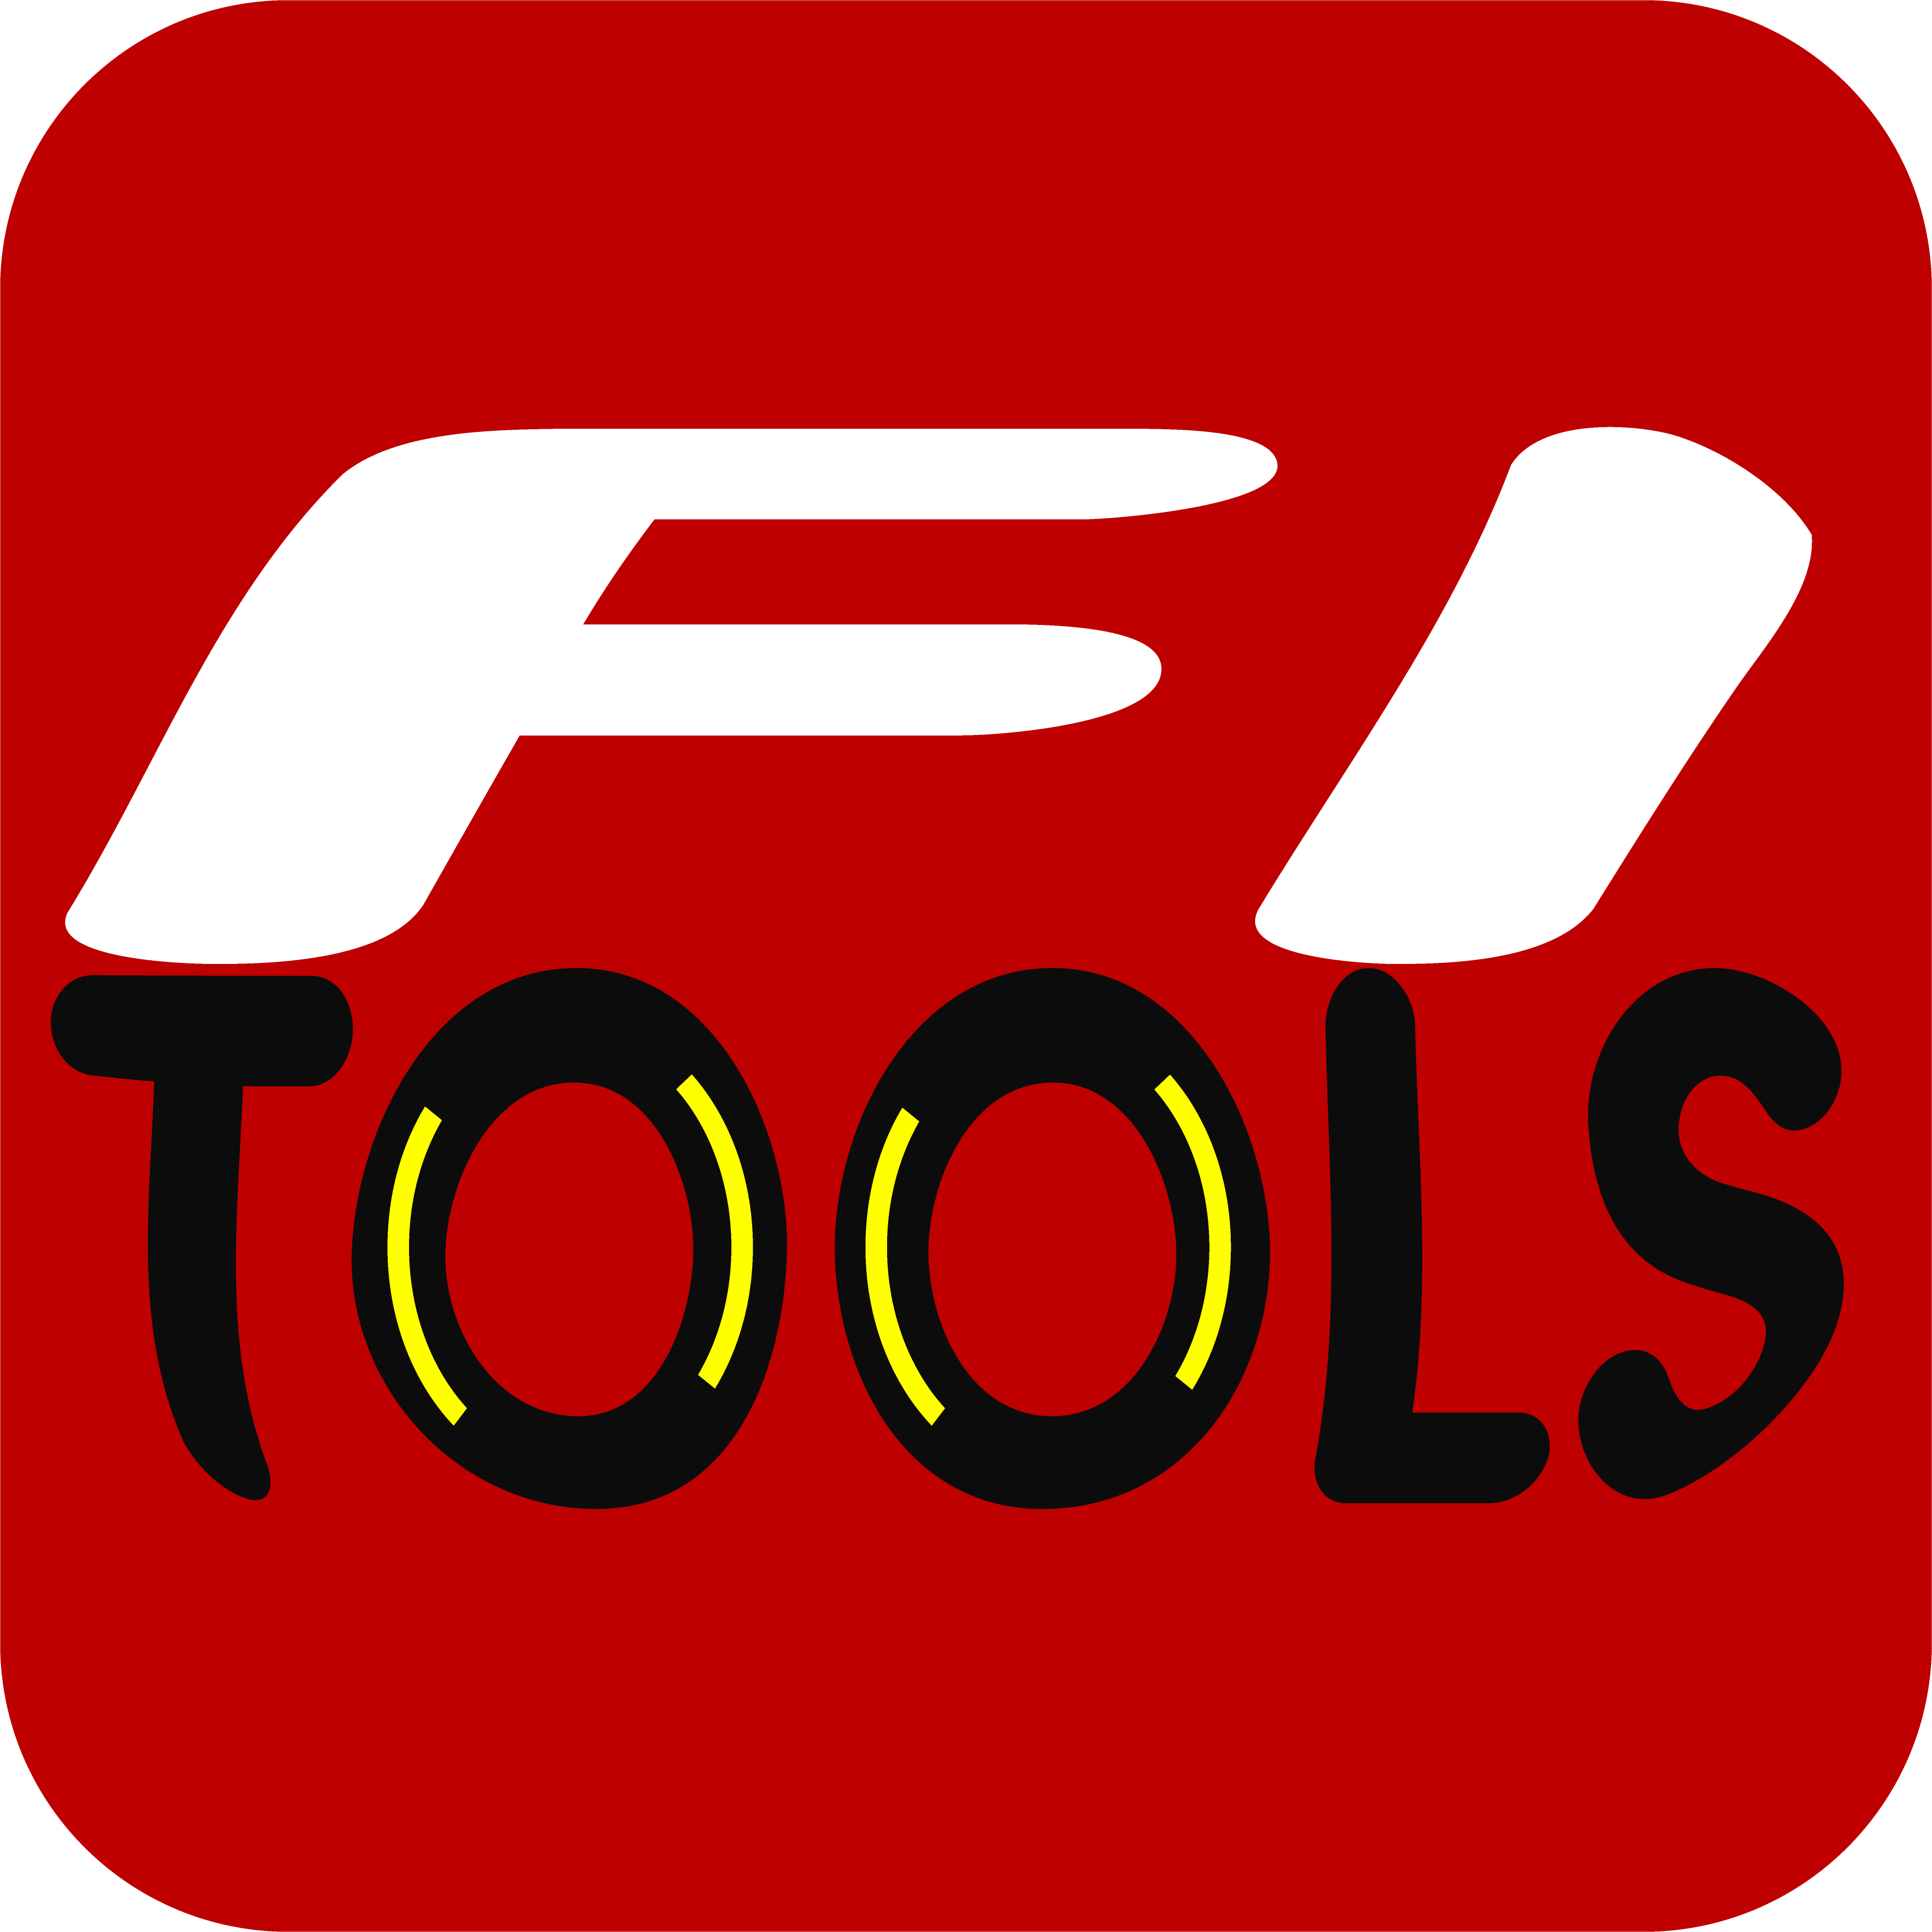 f1 tools logo